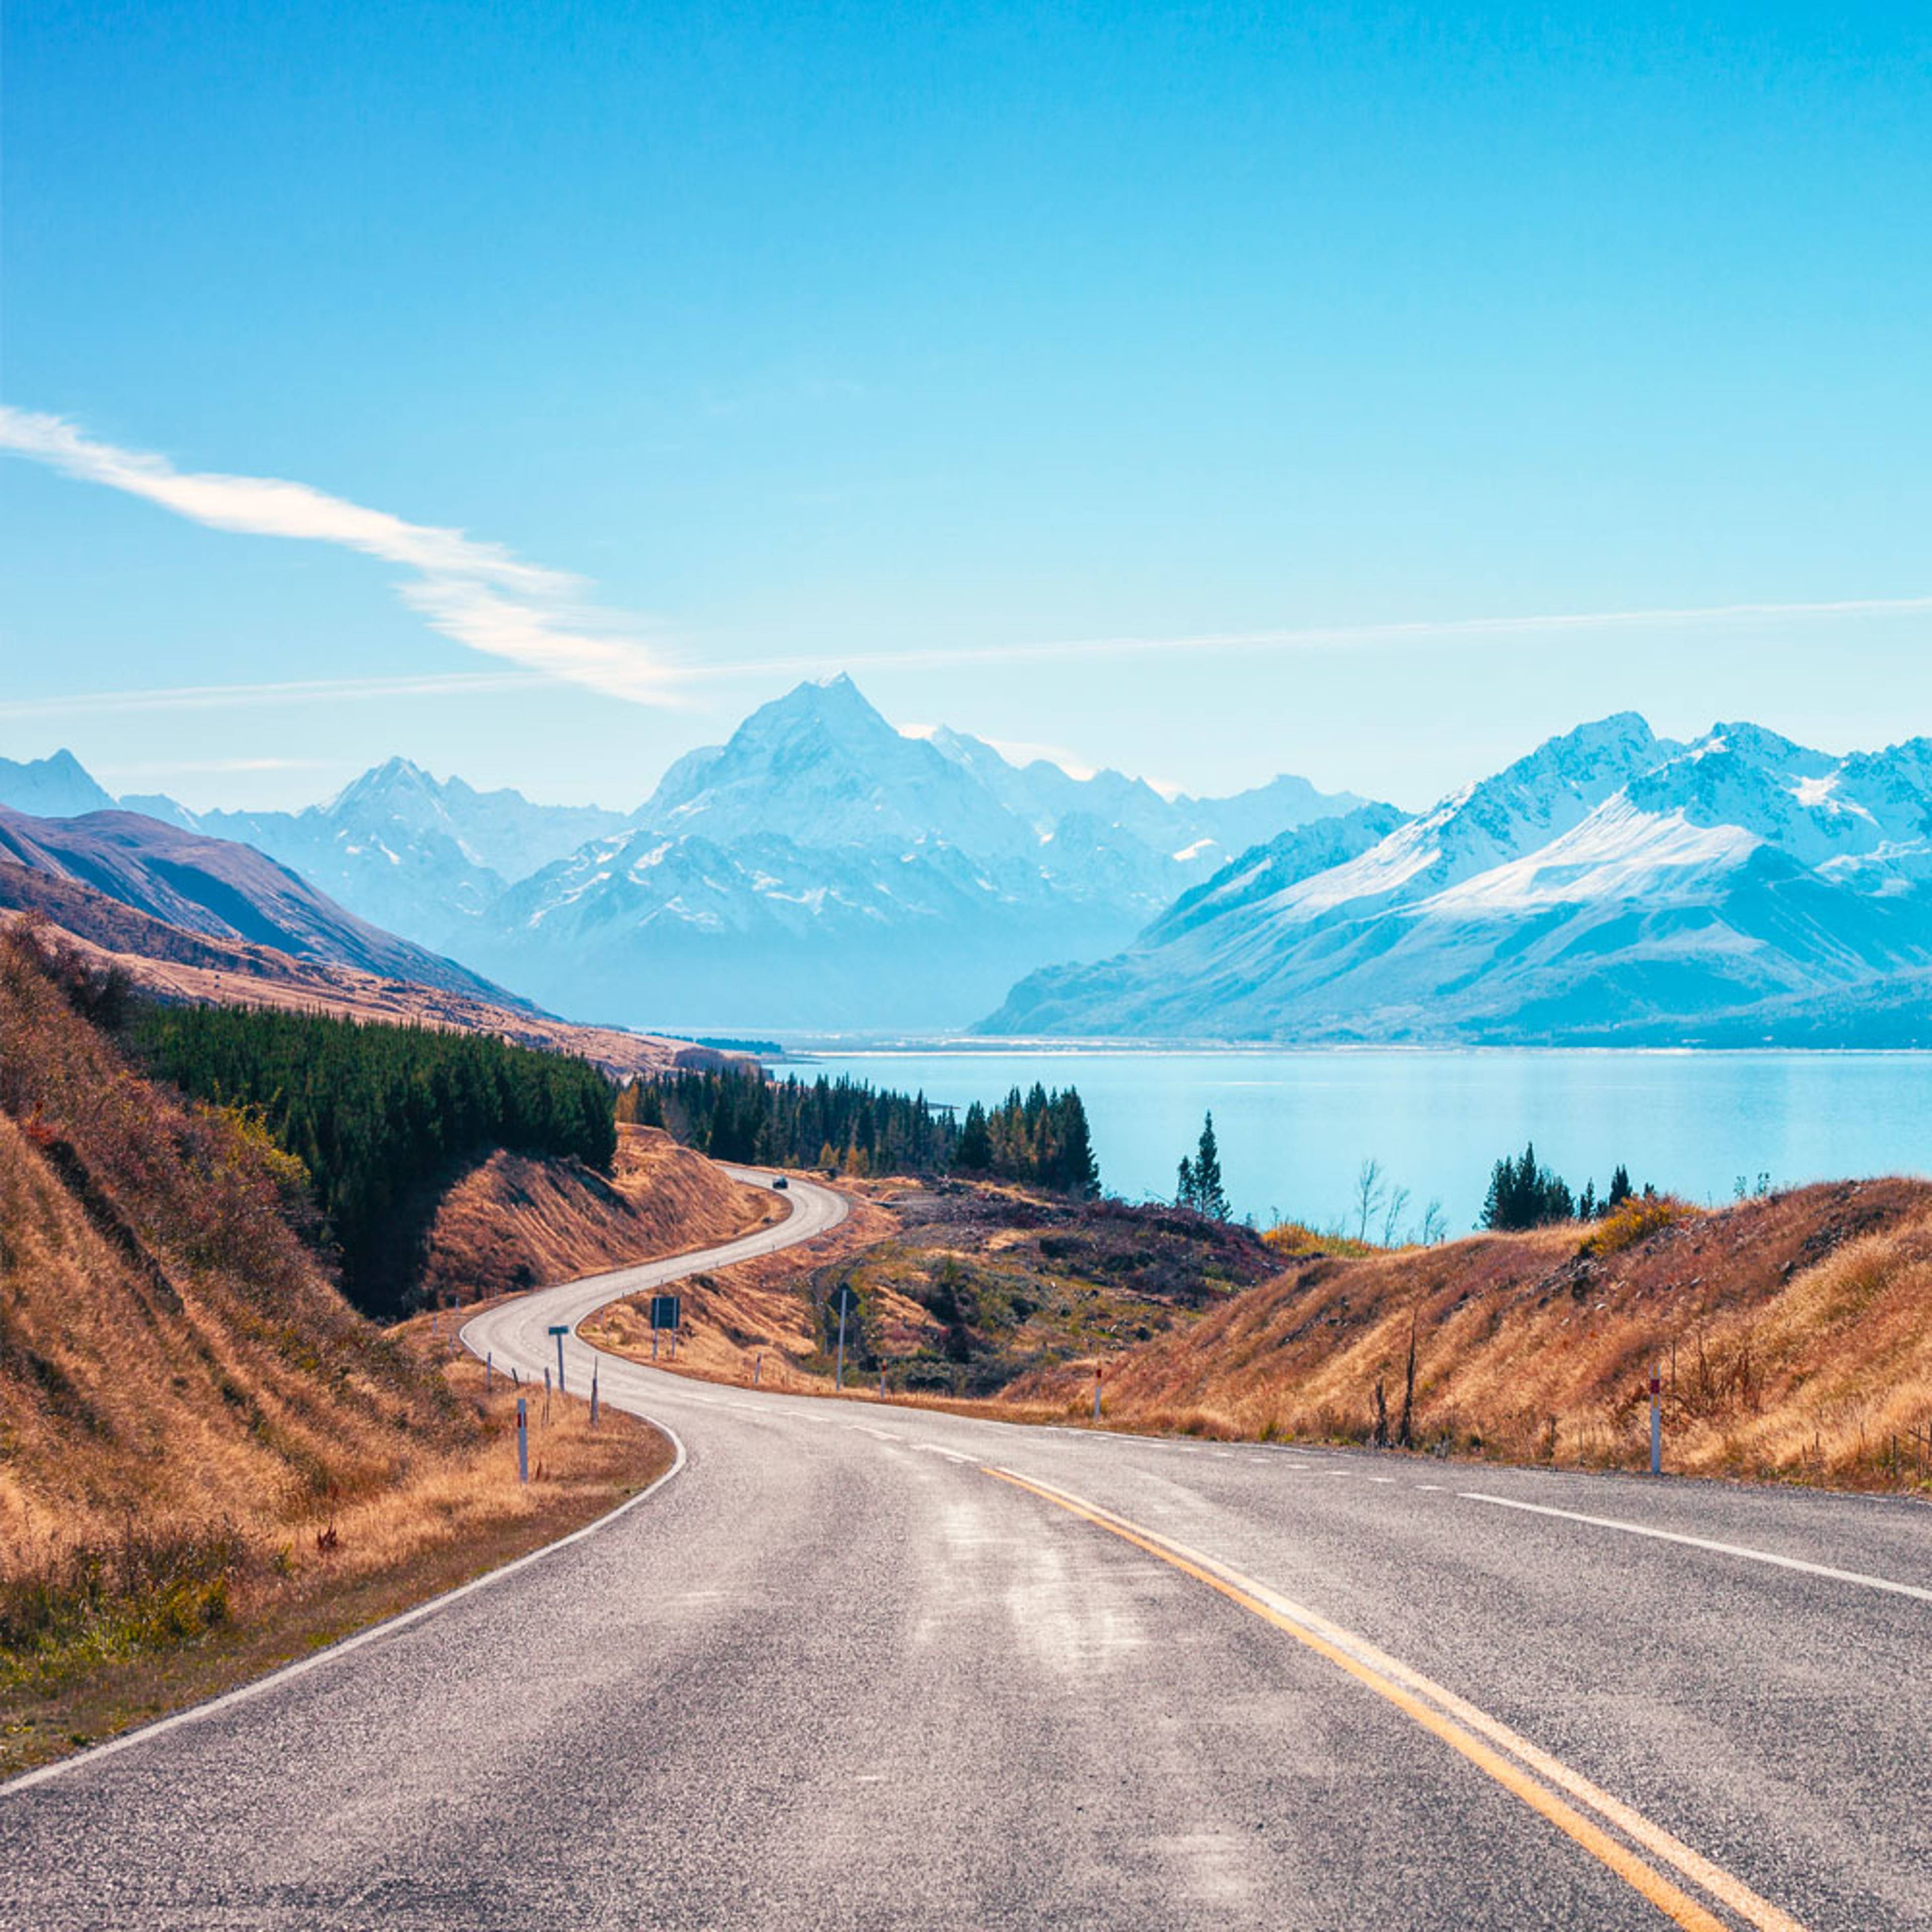 Votre voyage en autotour en Nouvelle Zélande 100% sur mesure